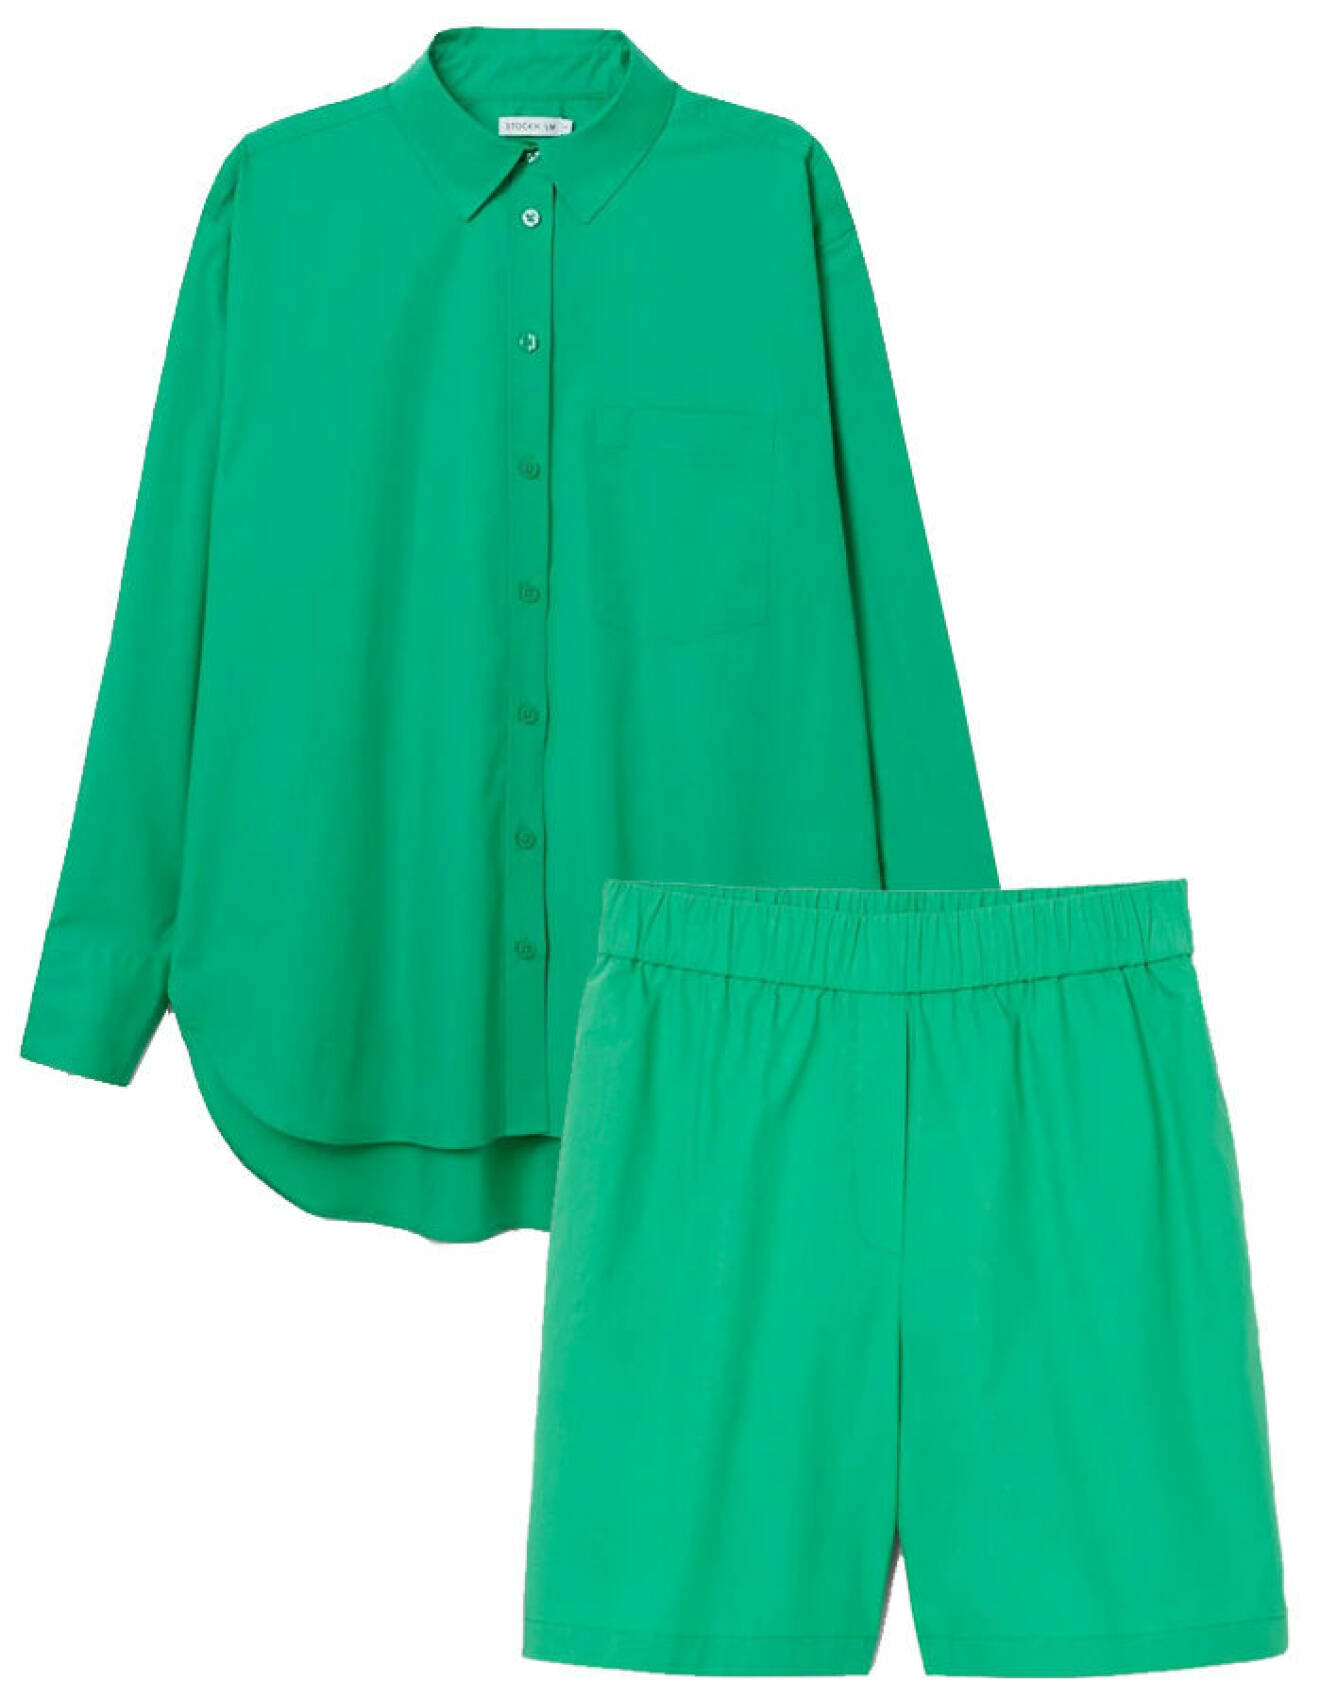 matchande grönt set med skjorta och shorts från Stockh lm Studio/MQ Marqet